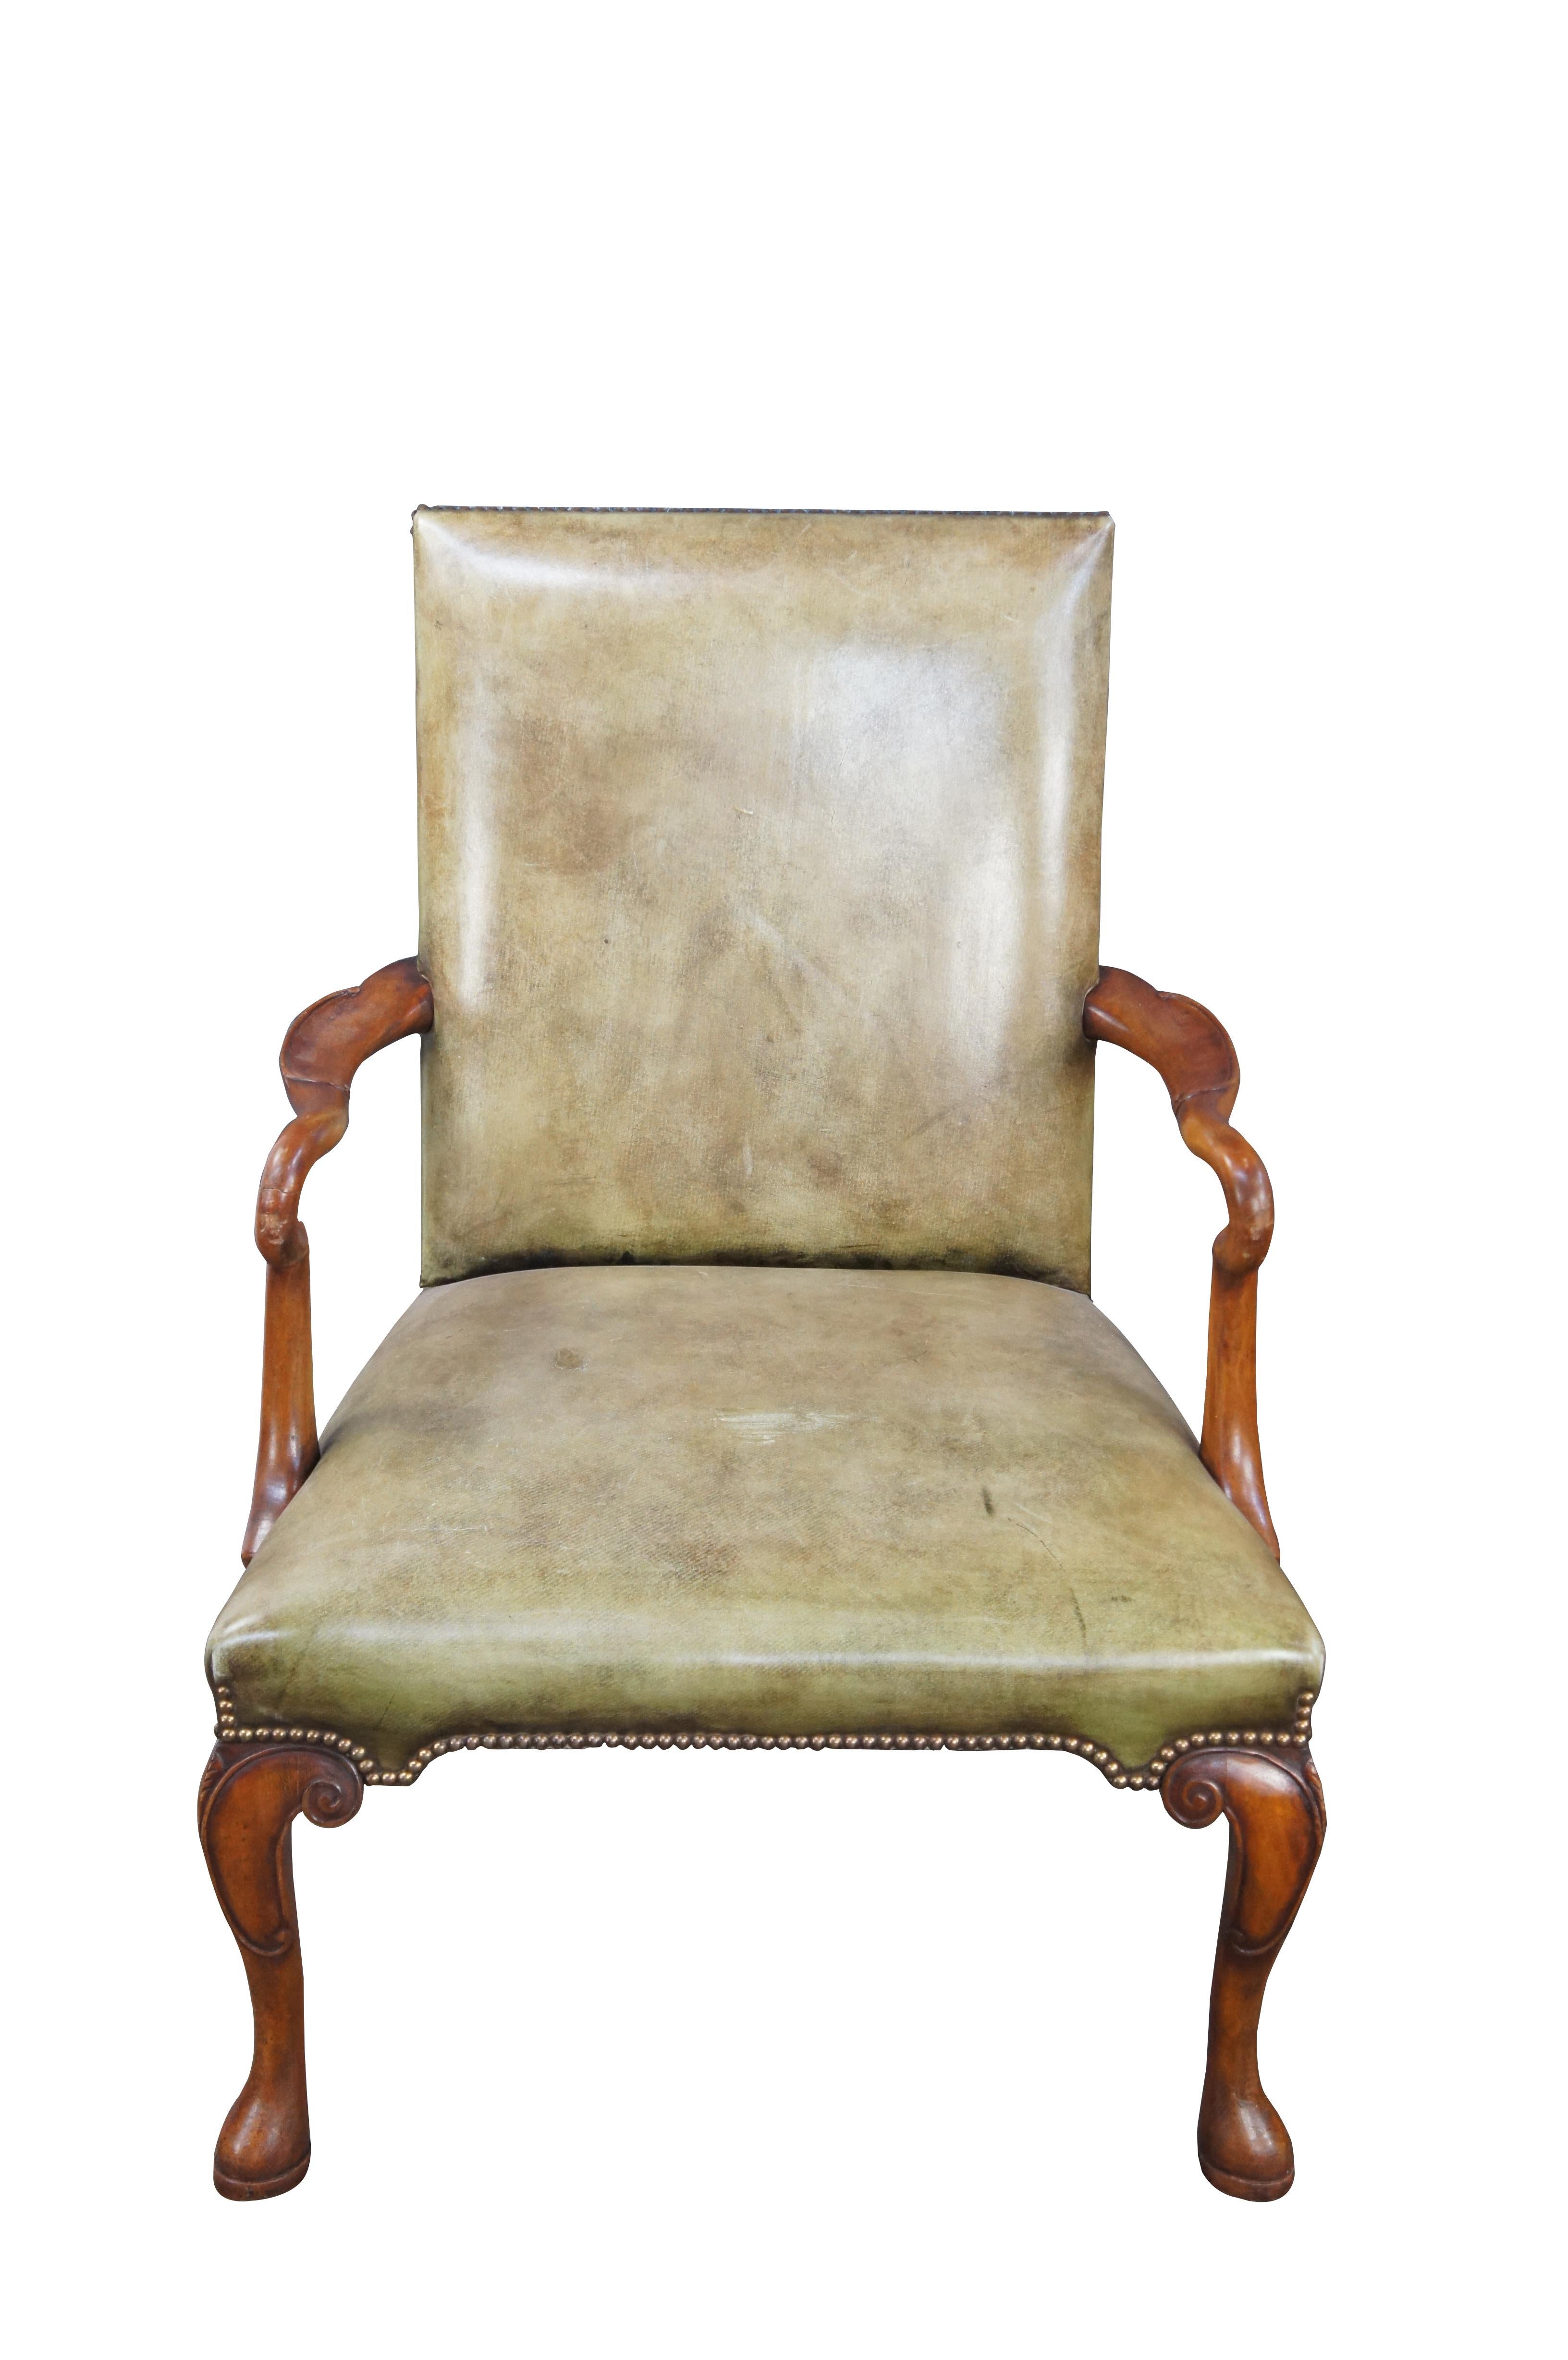 Ein stattlicher Sessel im georgianischen Stil von Arthur Brett, England, ca. Ende des 20. Jahrhunderts. Mit einem Mahagoni-Rahmen mit konturierten Schwanenhals-Armlehnen, einem mit grünem Leder gepolsterten Sitz mit Messingnägeln und